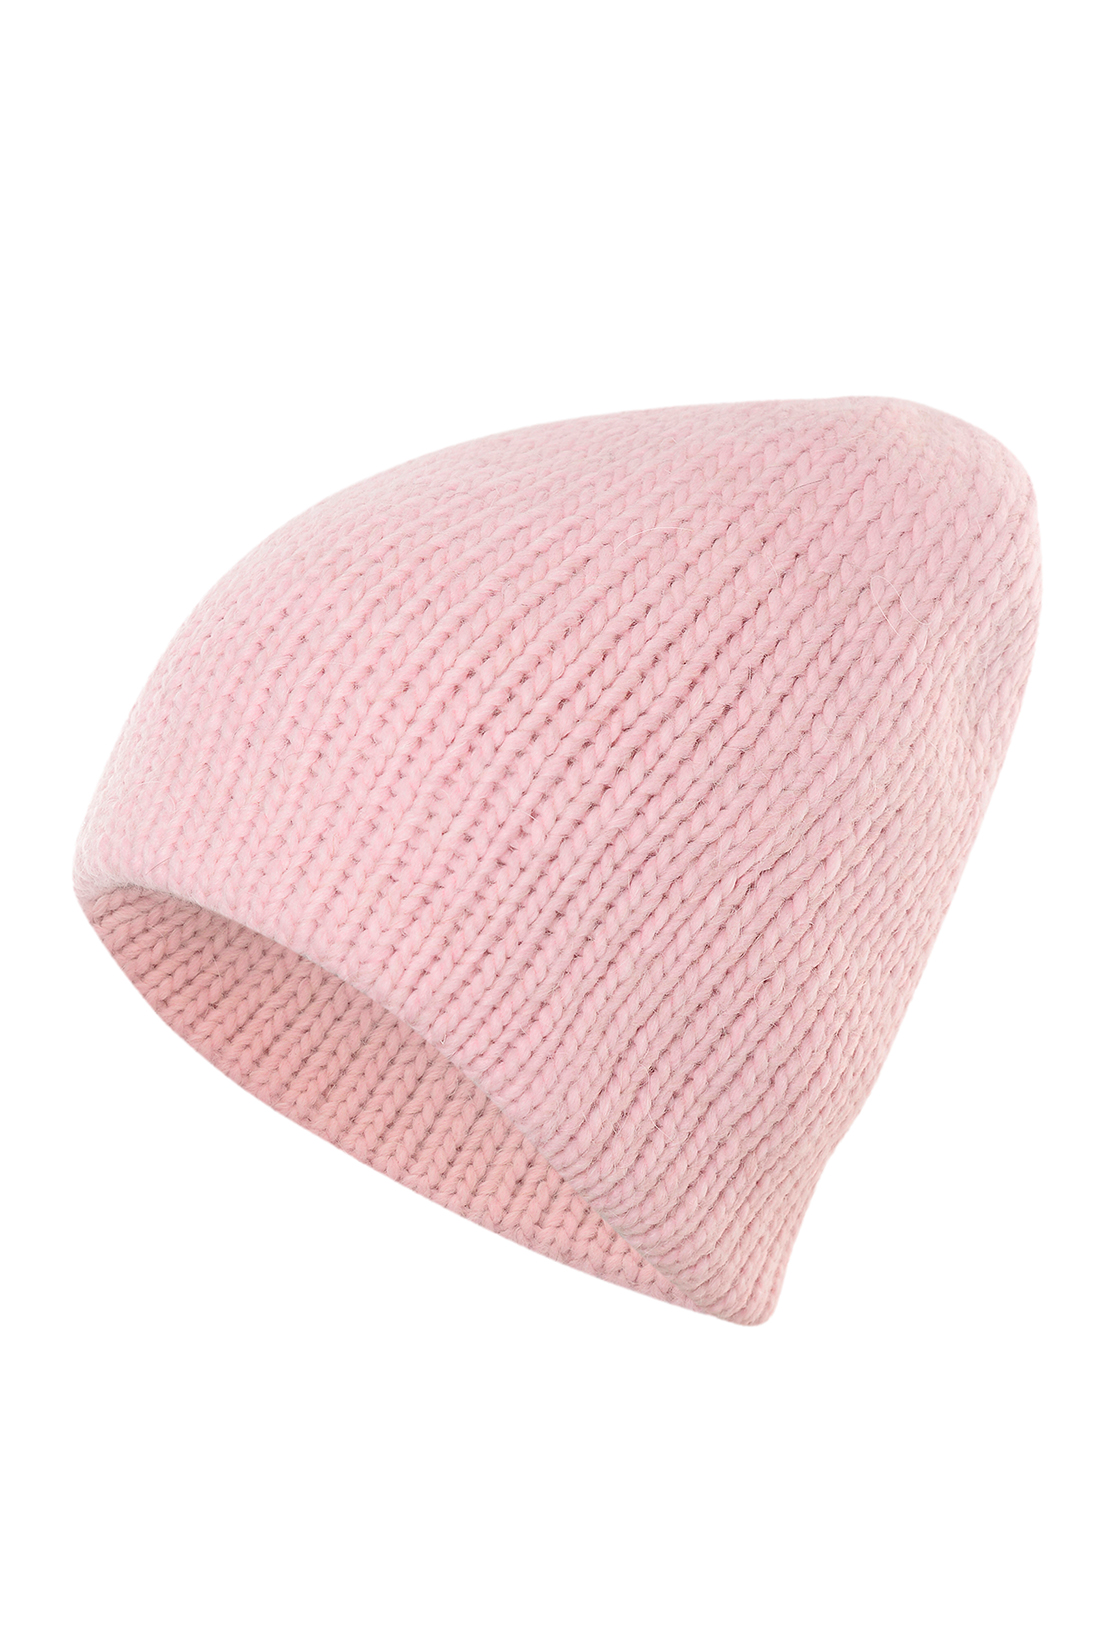 Нежная шапка-бини (арт. baon B349550), размер Б/р 56, цвет розовый Нежная шапка-бини (арт. baon B349550) - фото 2